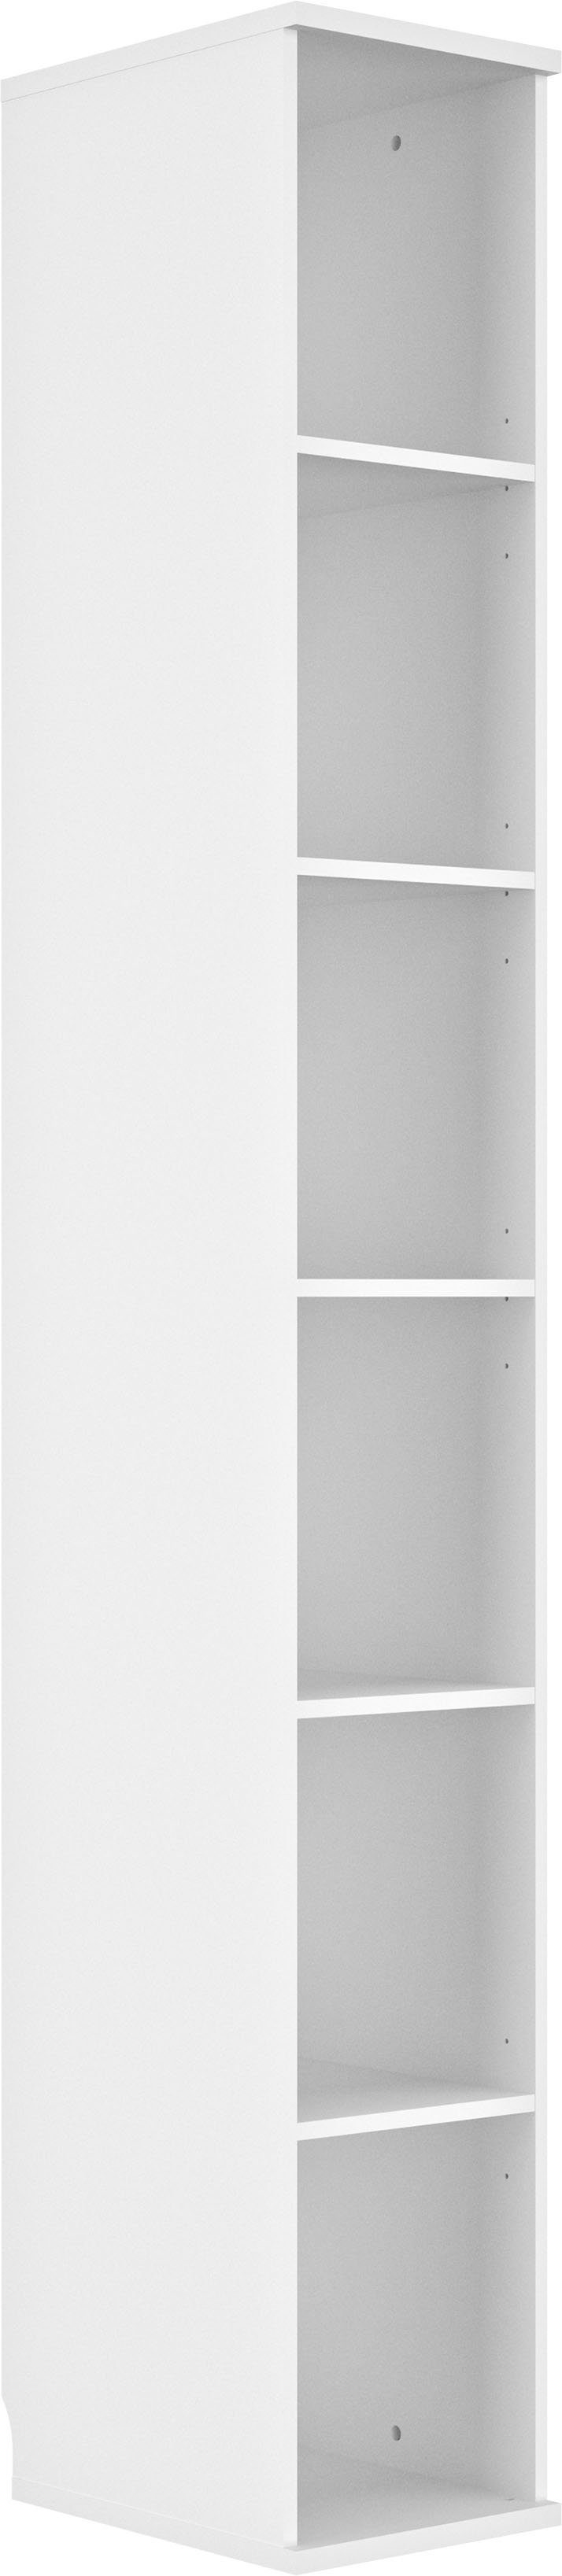 Gami Bücherregal Module vollständig an Verschiedene es zu Enzo, Ausschnitte der 1-tlg., einfach kleben Rückseite, um der Wand auf zu kombinieren